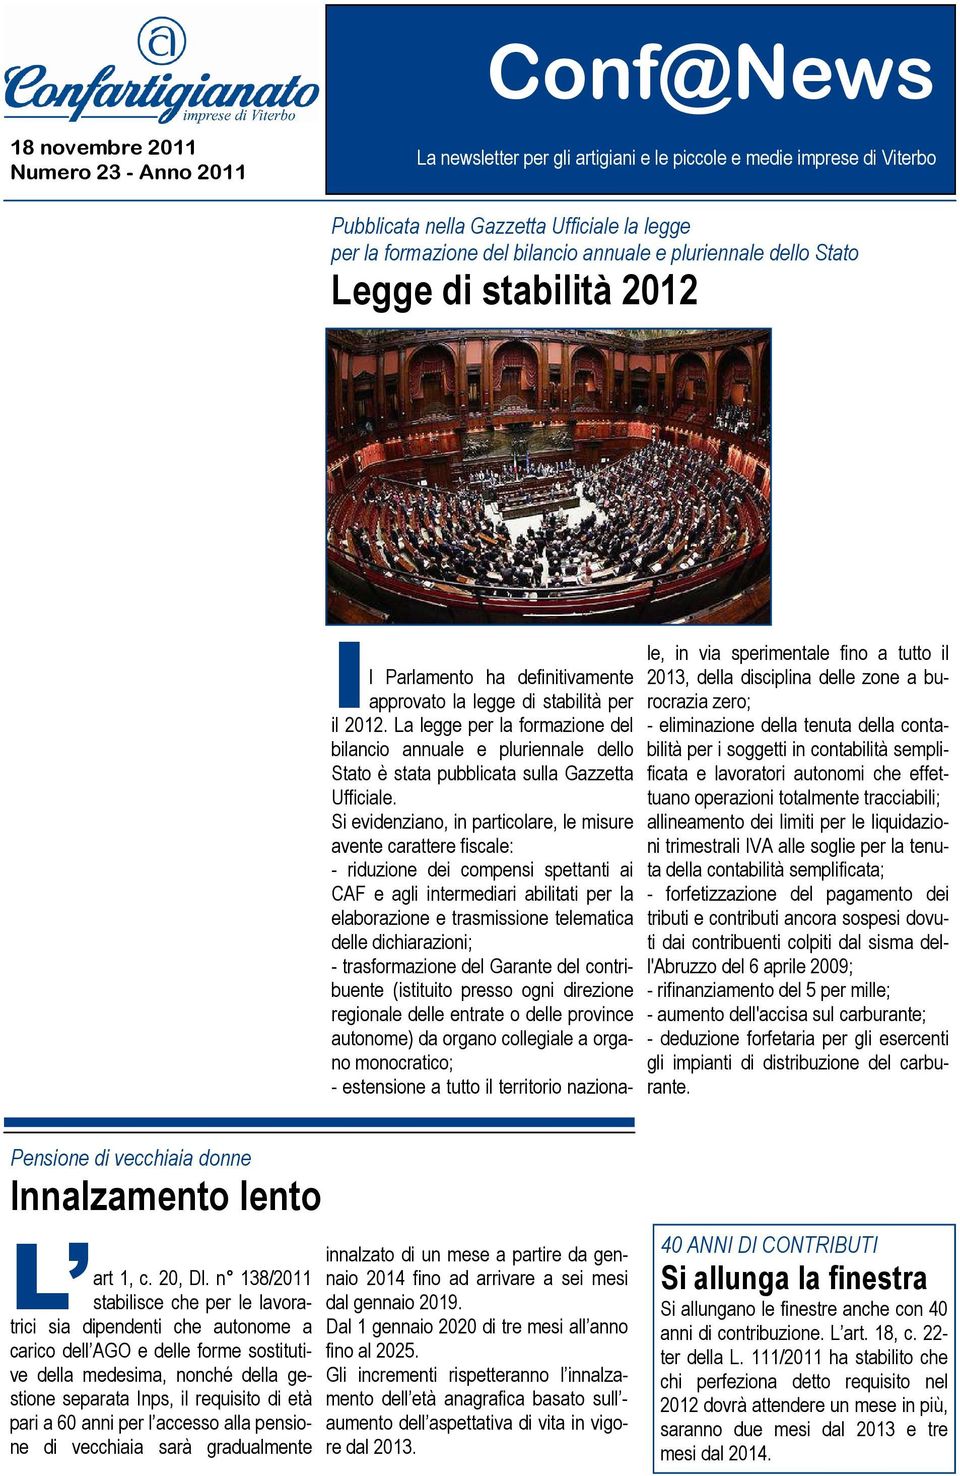 La legge per la formazione del bilancio annuale e pluriennale dello Stato è stata pubblicata sulla Gazzetta Ufficiale.